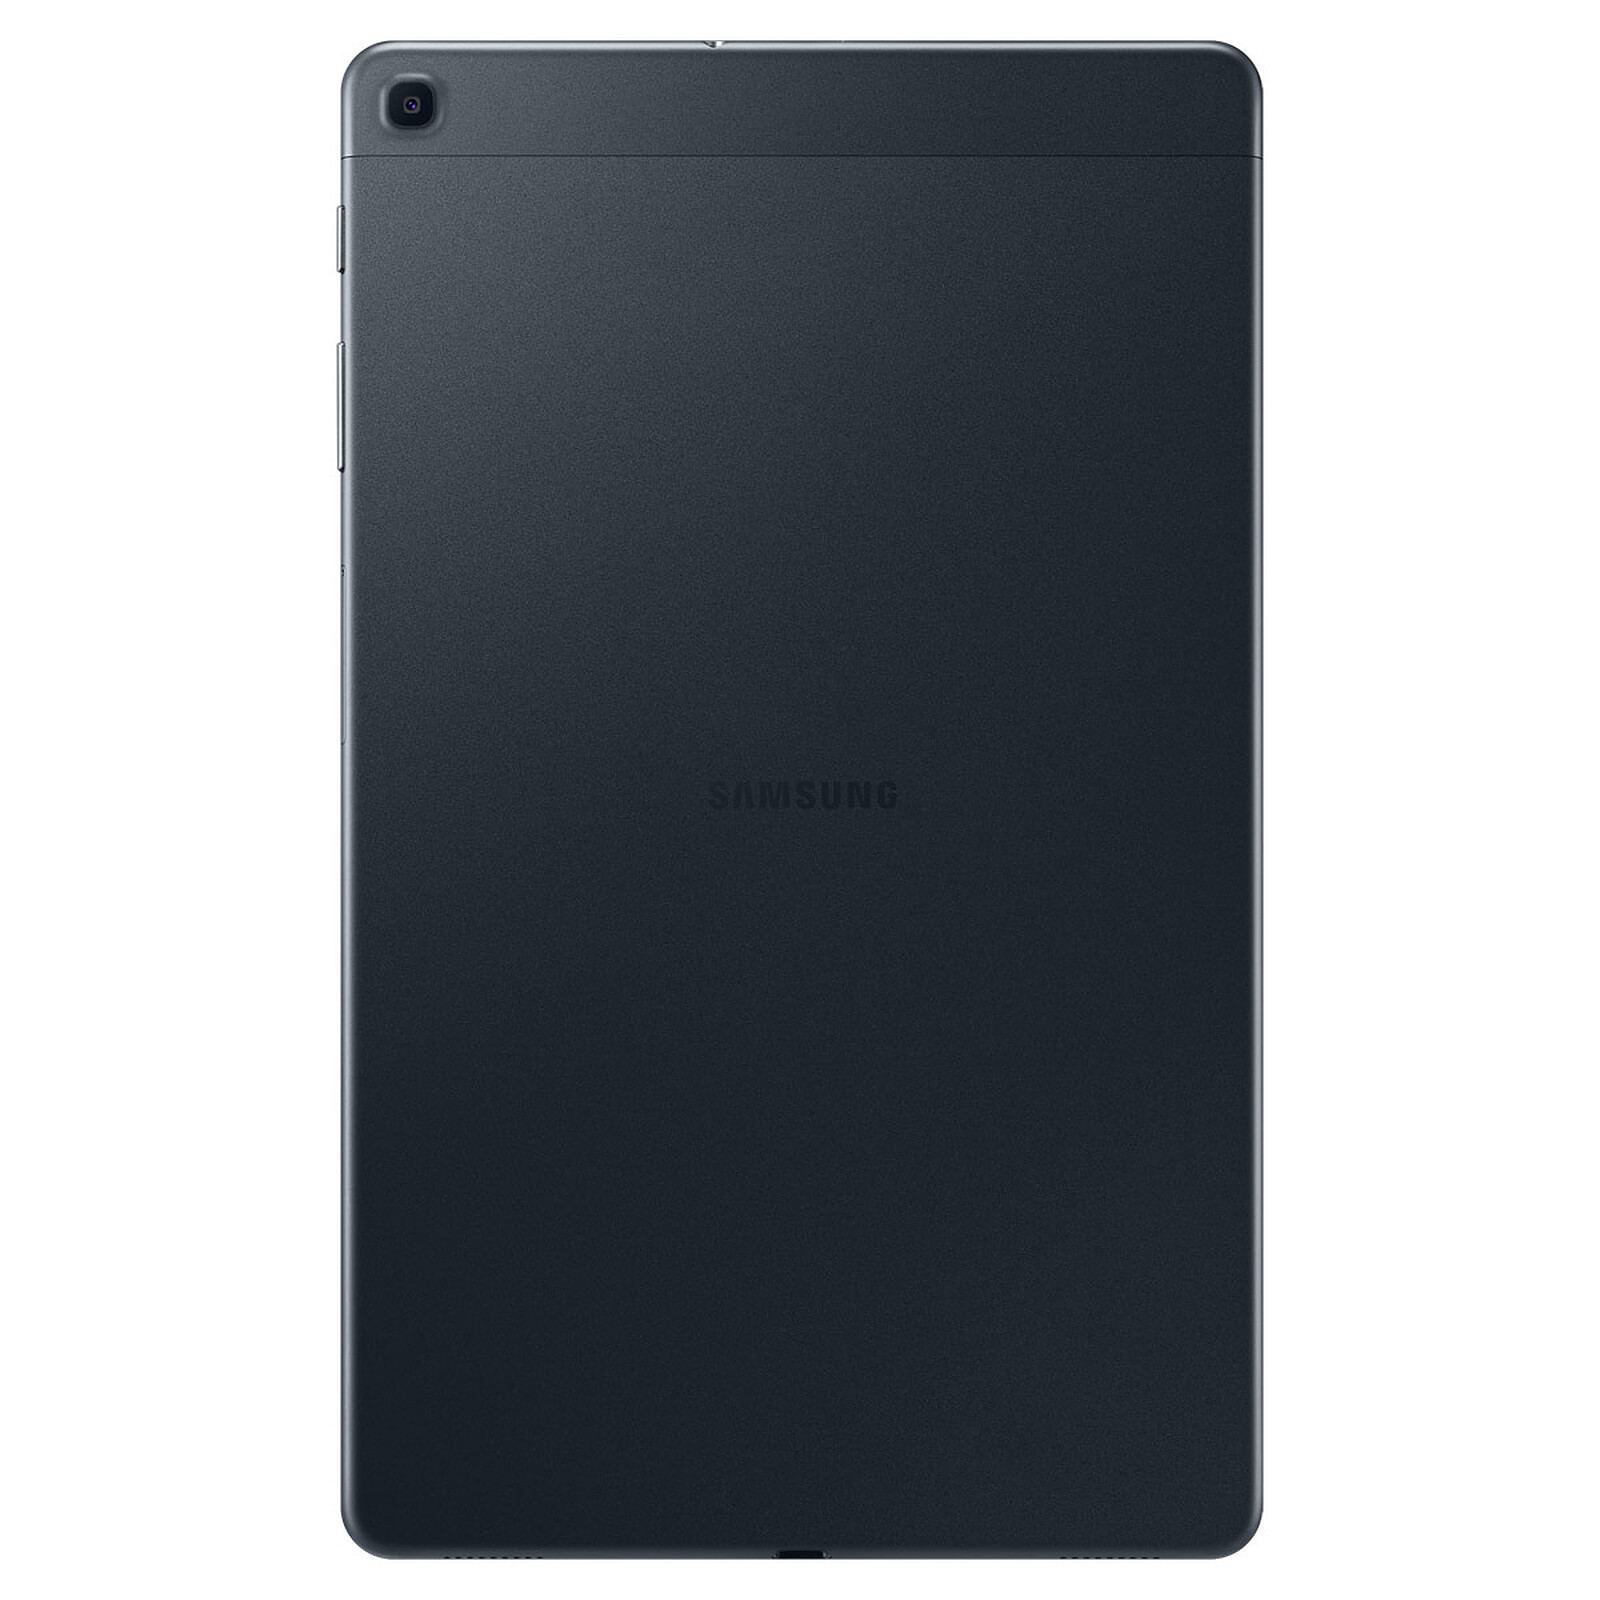 Samsung Galaxy Tab A 10.1 2019, características, precio y ficha técnica